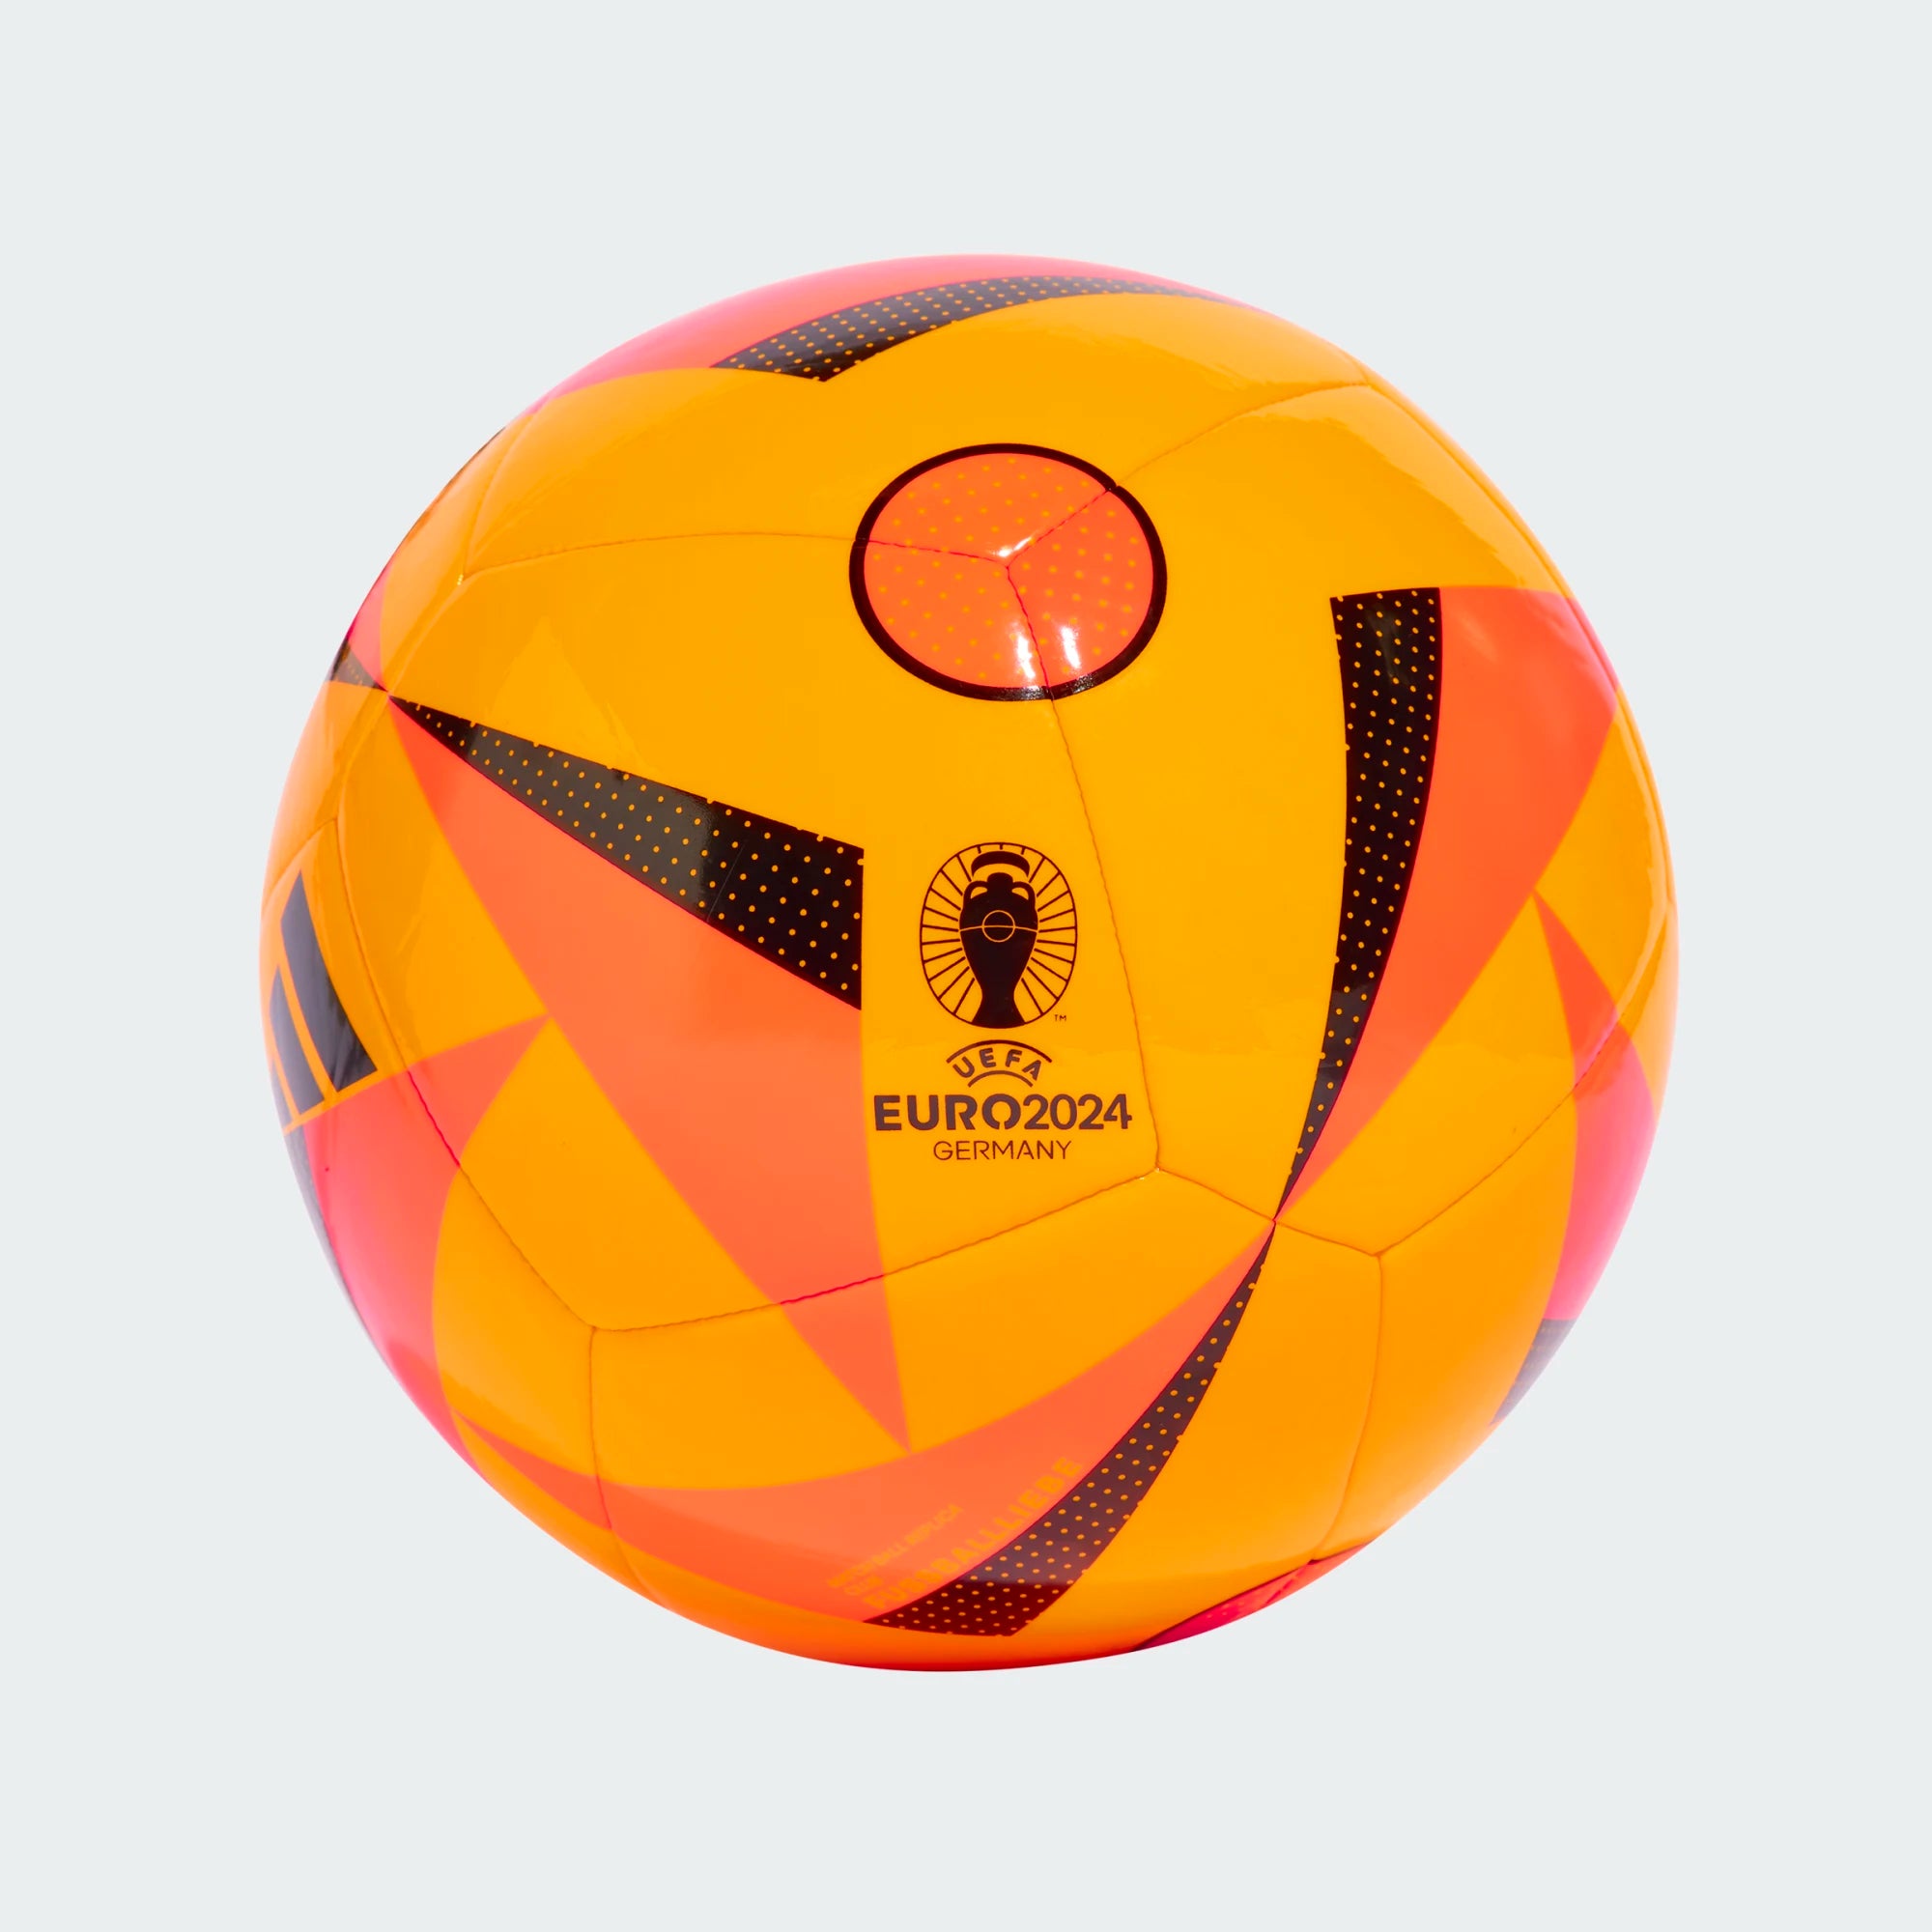 Voici “Fussballliebe”, le ballon officiel de l'Euro 2024 (VIDÉO et